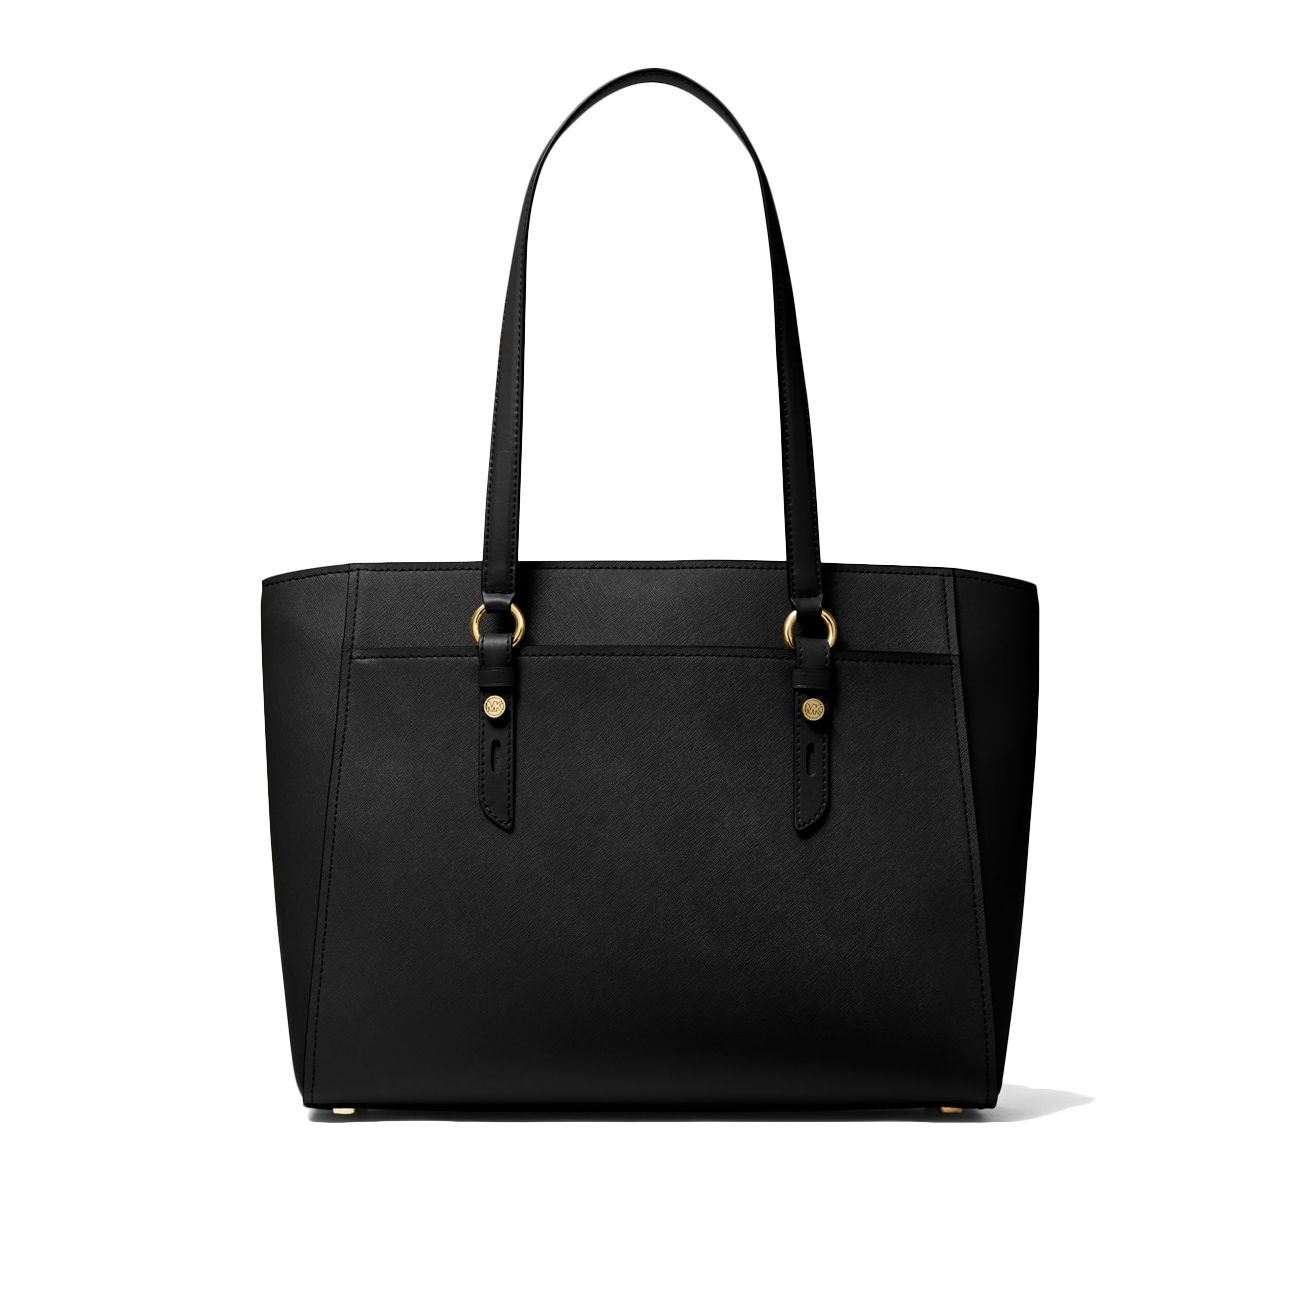 Women’s “Michael Kors” Sullivan Messenger Bag, Dark Denim. One Size.